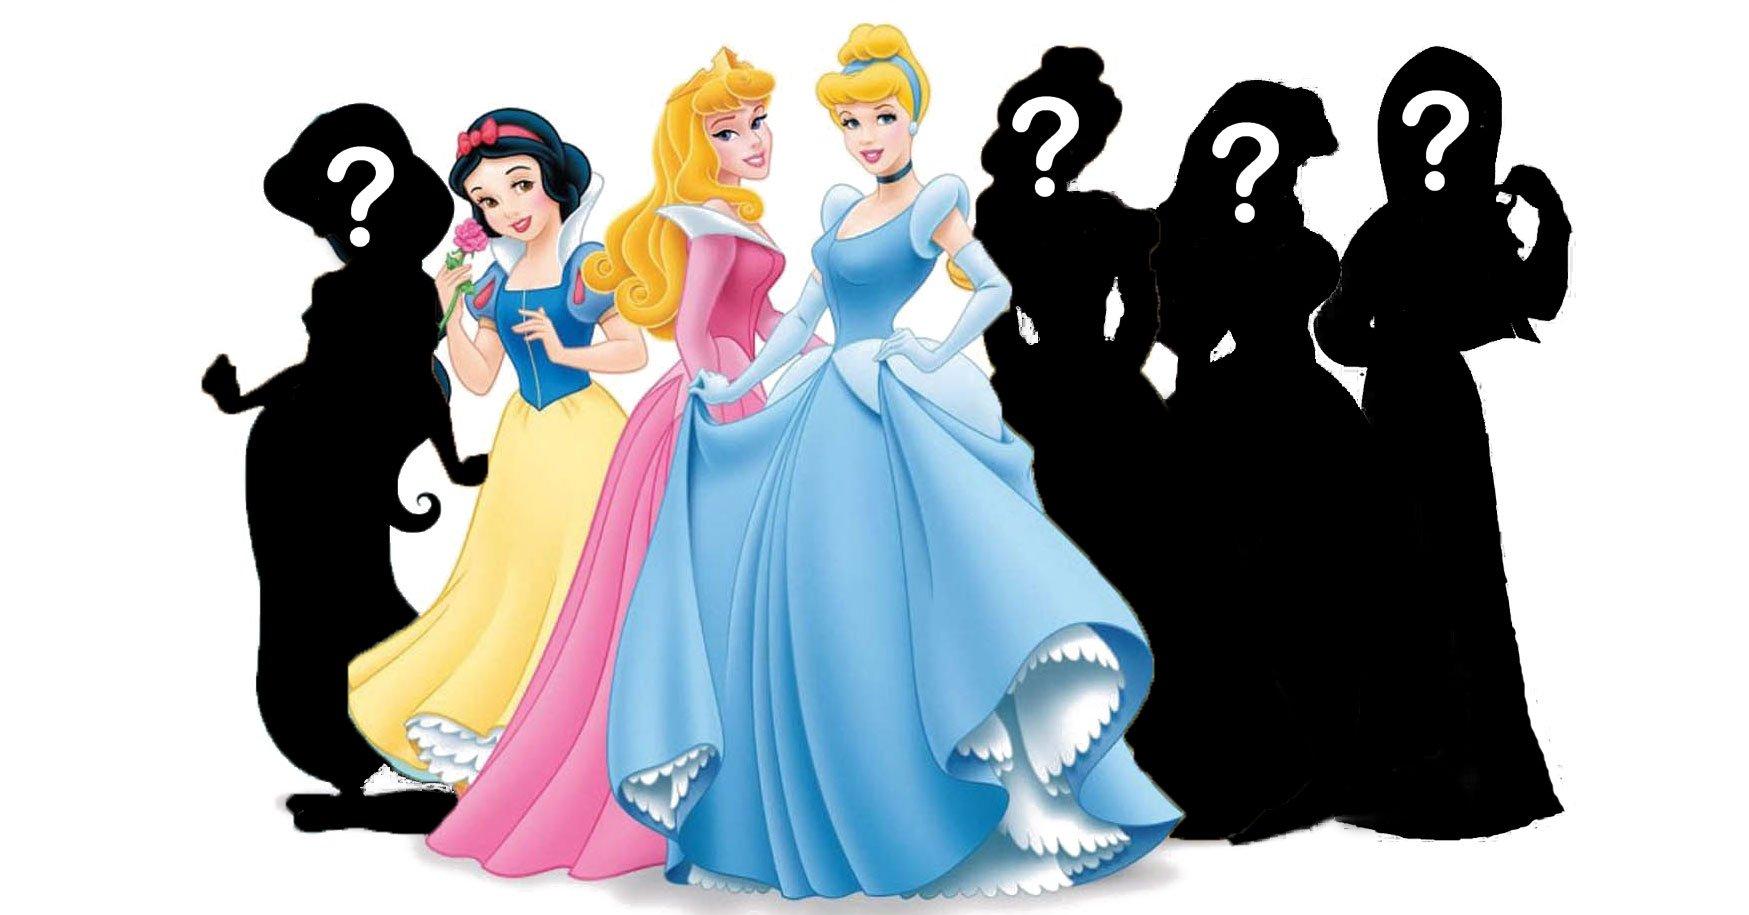 Hãy cùng đón xem hình ảnh của nhóm nhạc Disney và các công chúa, đặc biệt là cô nàng Bạch Tuyết với trang phục lộng lẫy và thần tiên. Còn chần chừ gì nữa, hãy đến với thế giới cổ tích của Disney ngay!